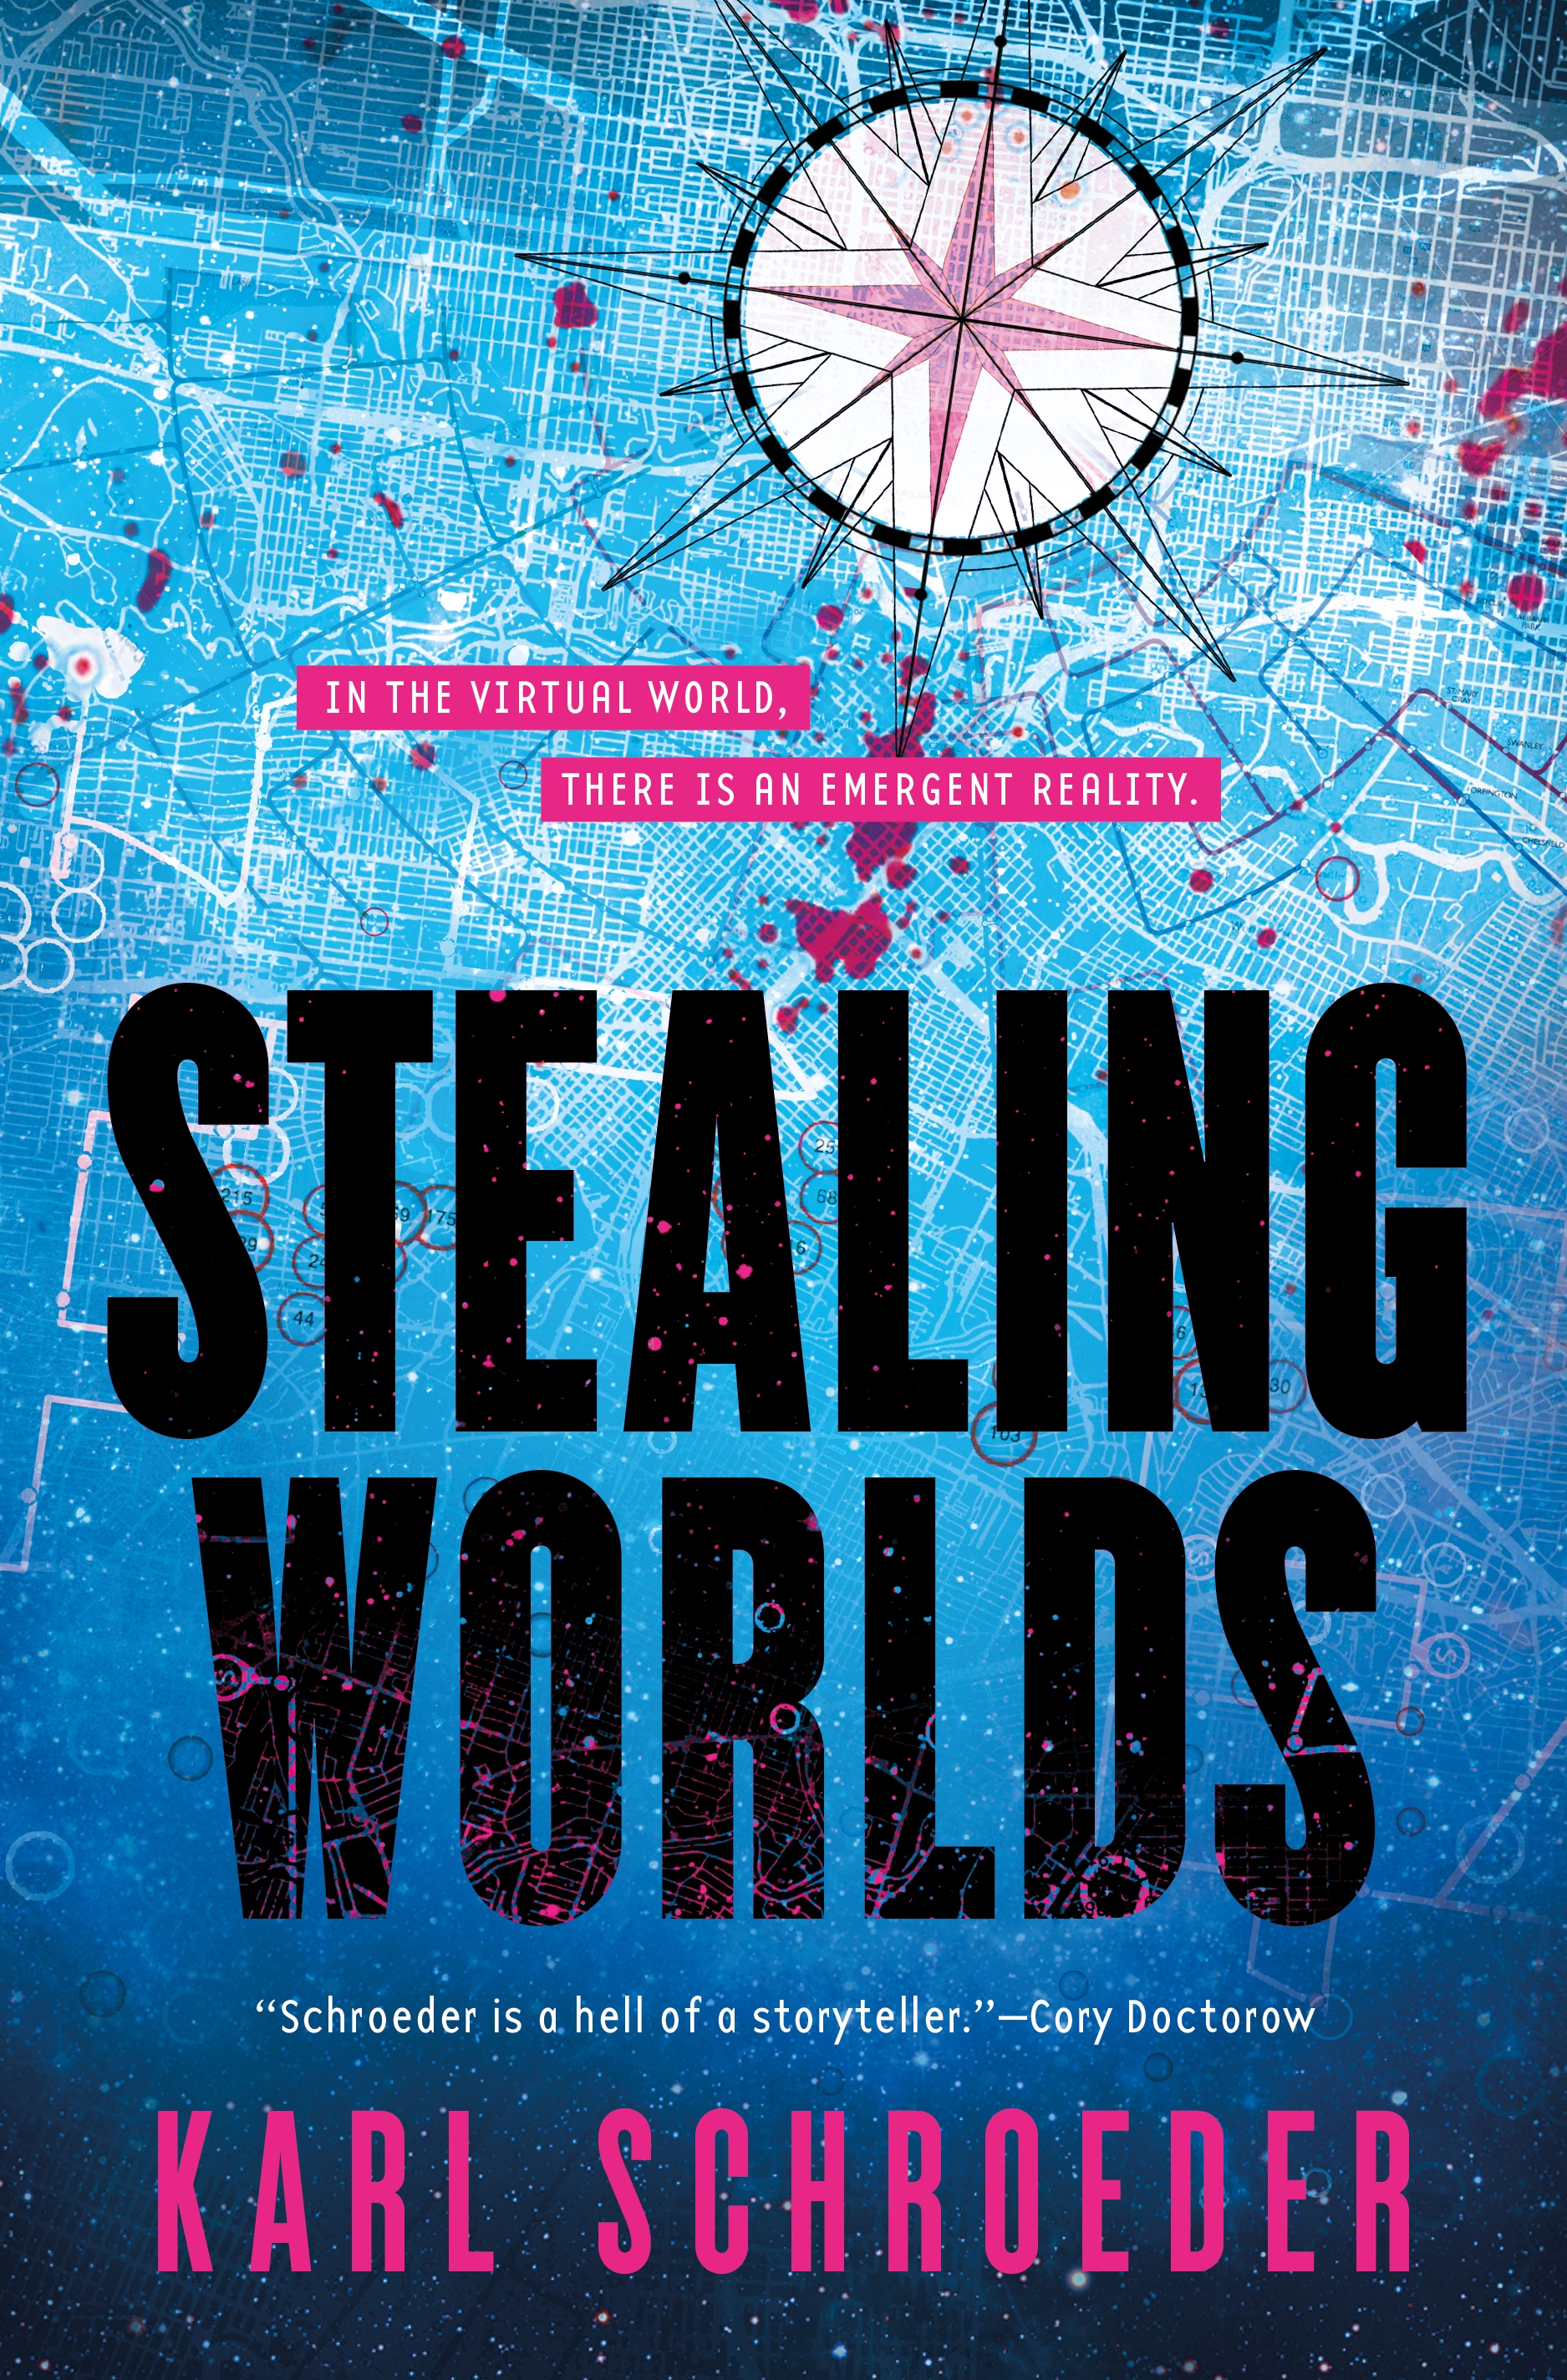 Stealing Worlds by Karl Schroeder